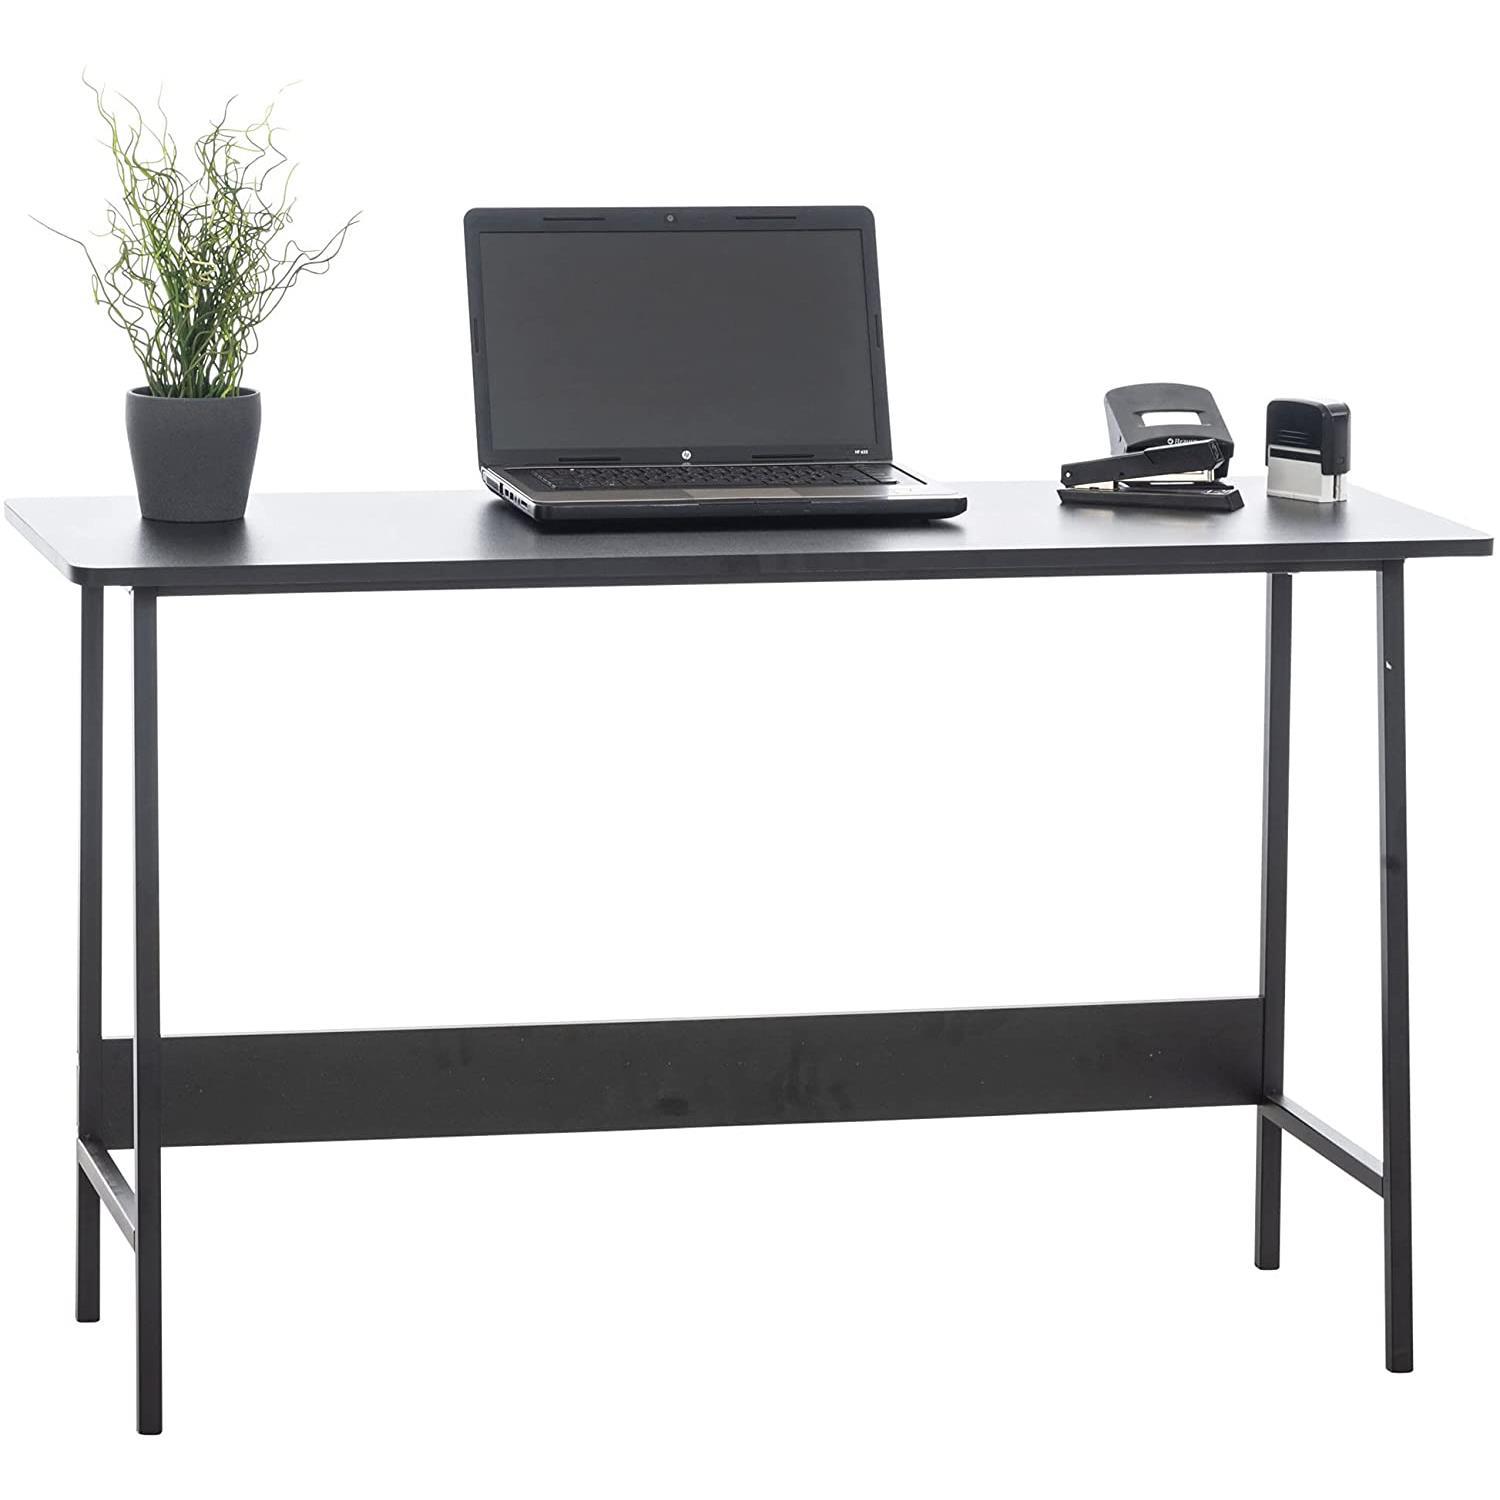 Schreibtisch MINT, 120x45x71 cm, im Industriedesign, Metall und Holz, Farbe Schwarz